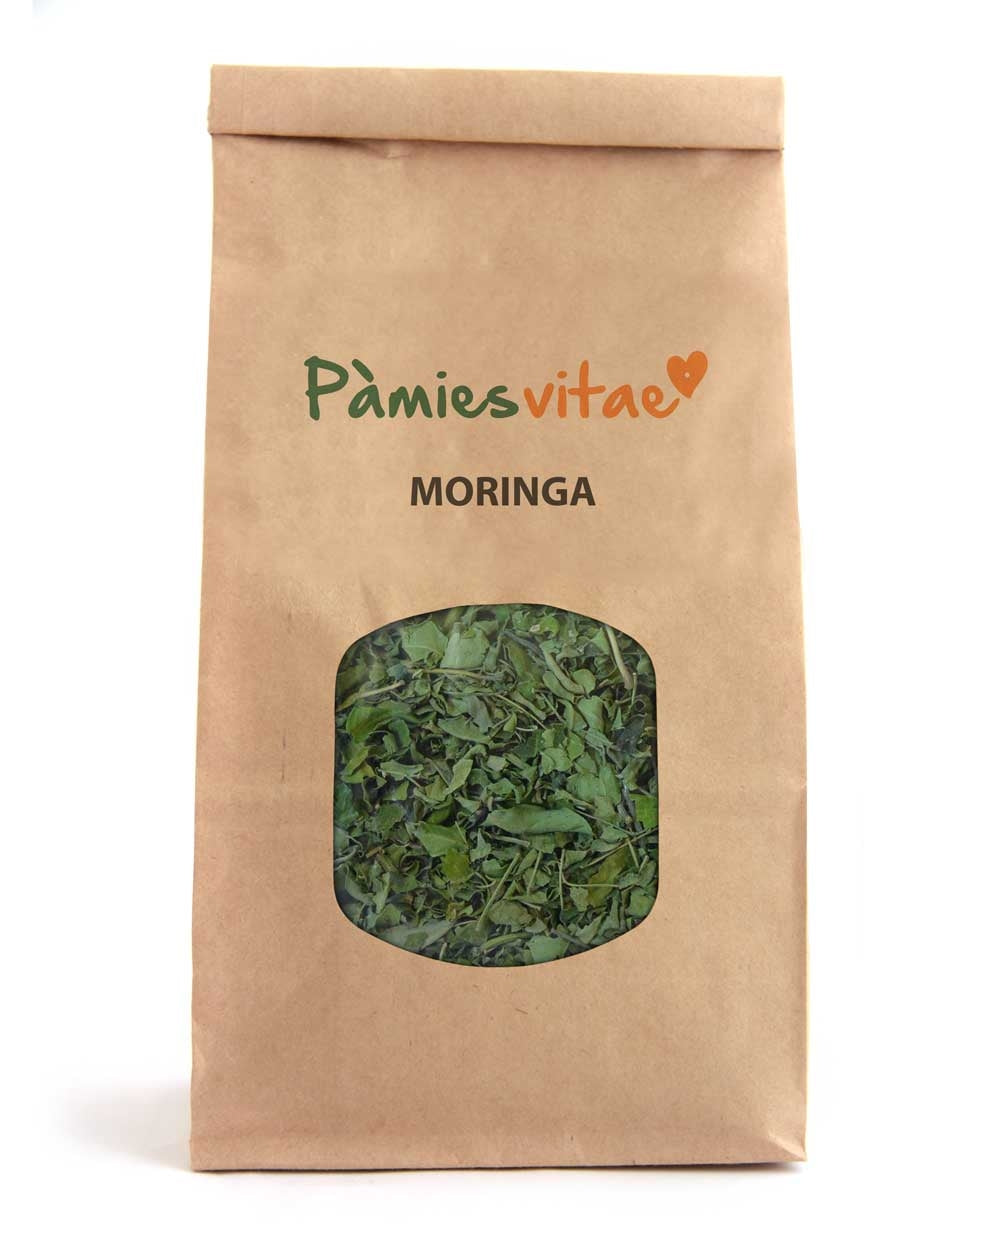 MORINGA - Moringa oleifera